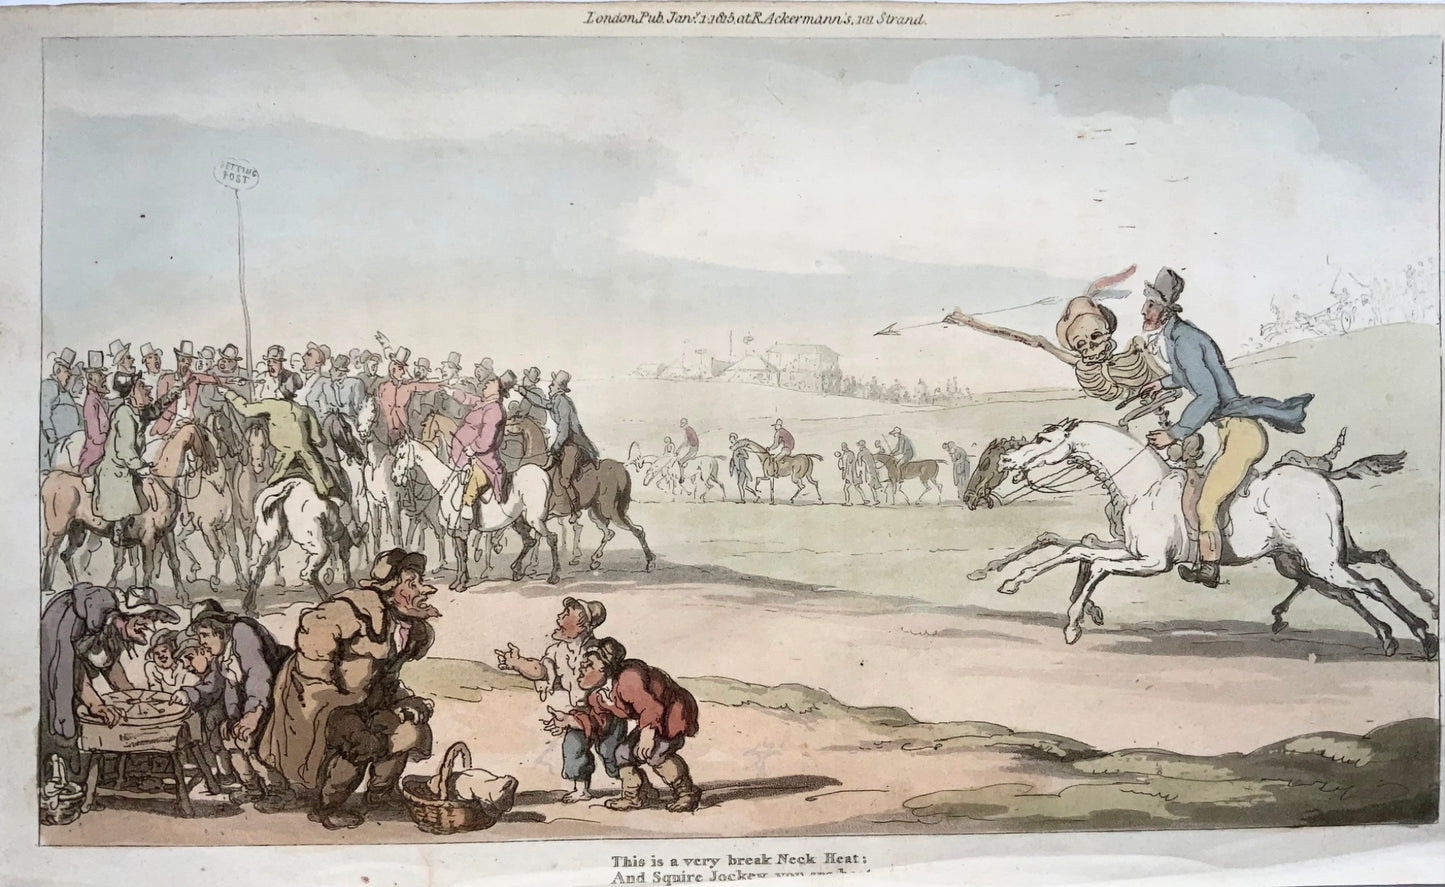 1814 Courses de chevaux, Rowlandson, Danse macabre, caricature, aquatinte